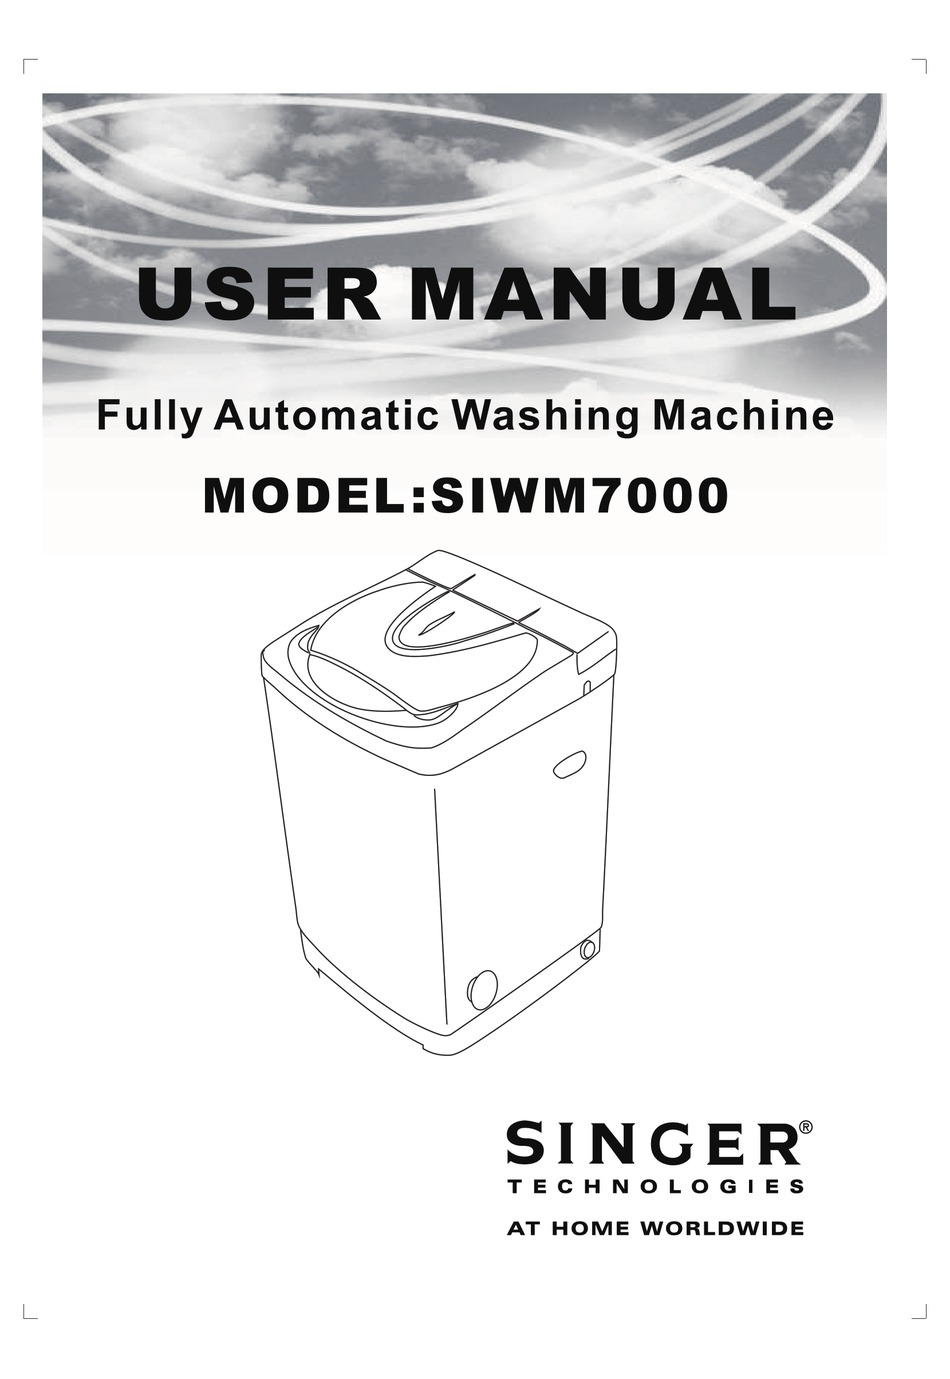 Singer Siwm7000 User Manual Pdf